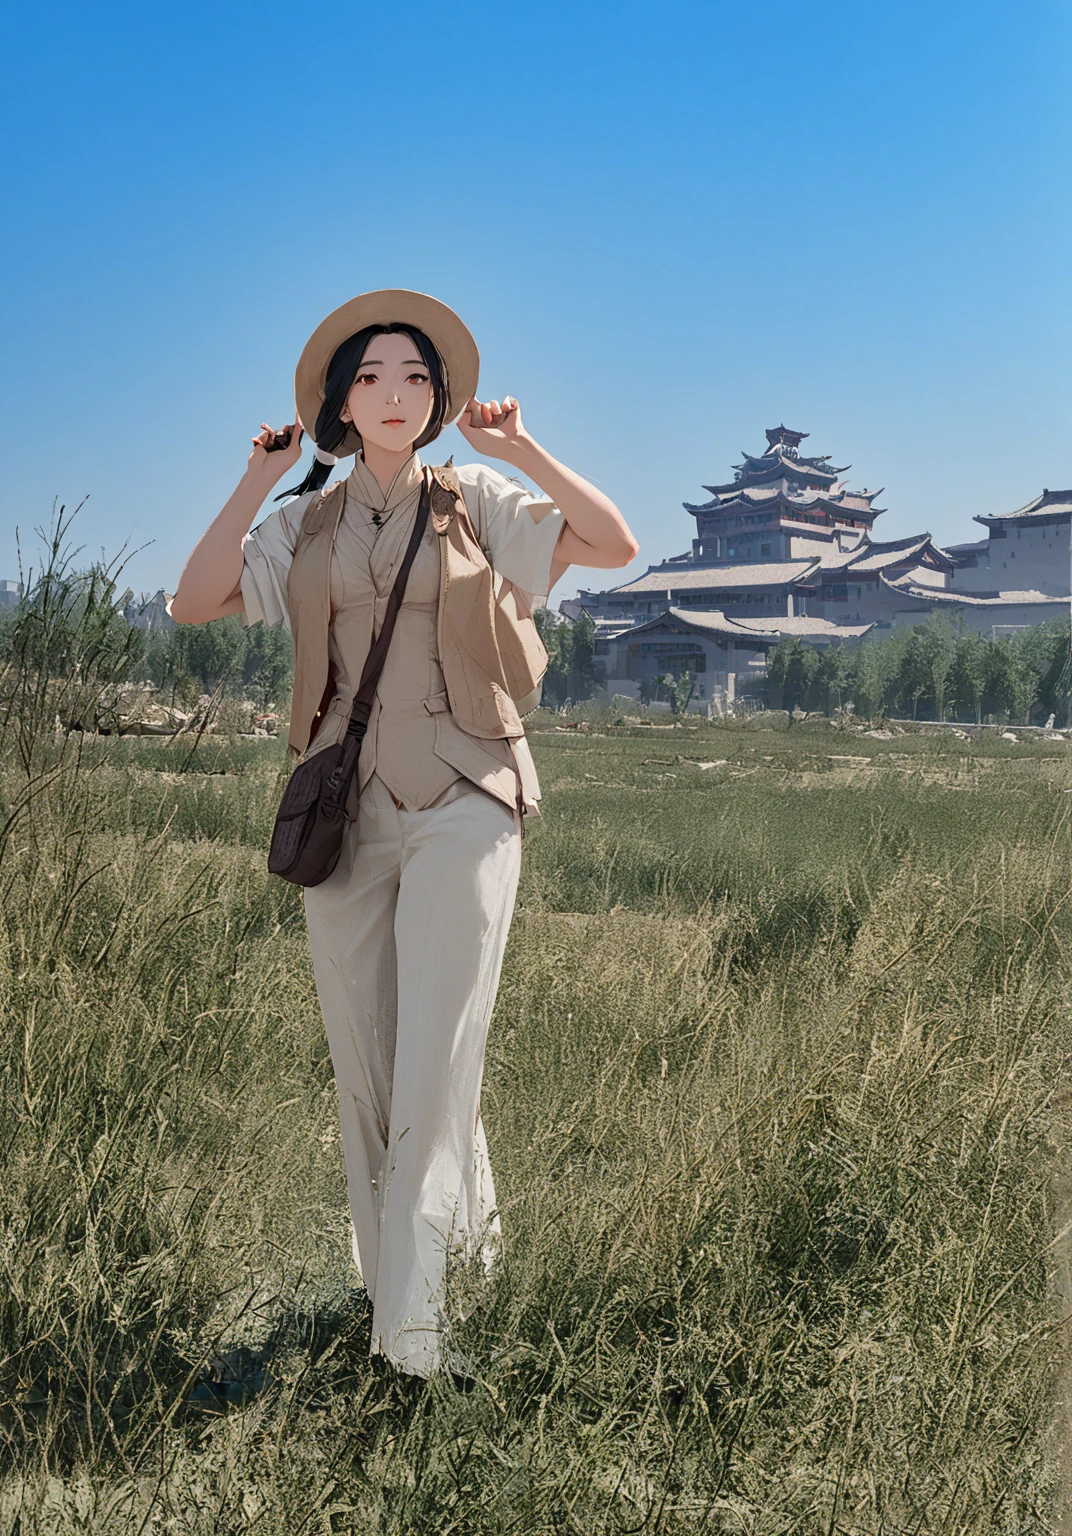 戴著帽子和背心的女人站在田野裡，背景是一座建筑, 在一座古城裡, 戴着旅行帽, 靈感來自唐逸芬, 北京, inspired by Zha Shibiao, 靈感來自姚廷梅, 受到張擇端的啟發, 受到顧正毅的啟發, 灵感来自陈道富